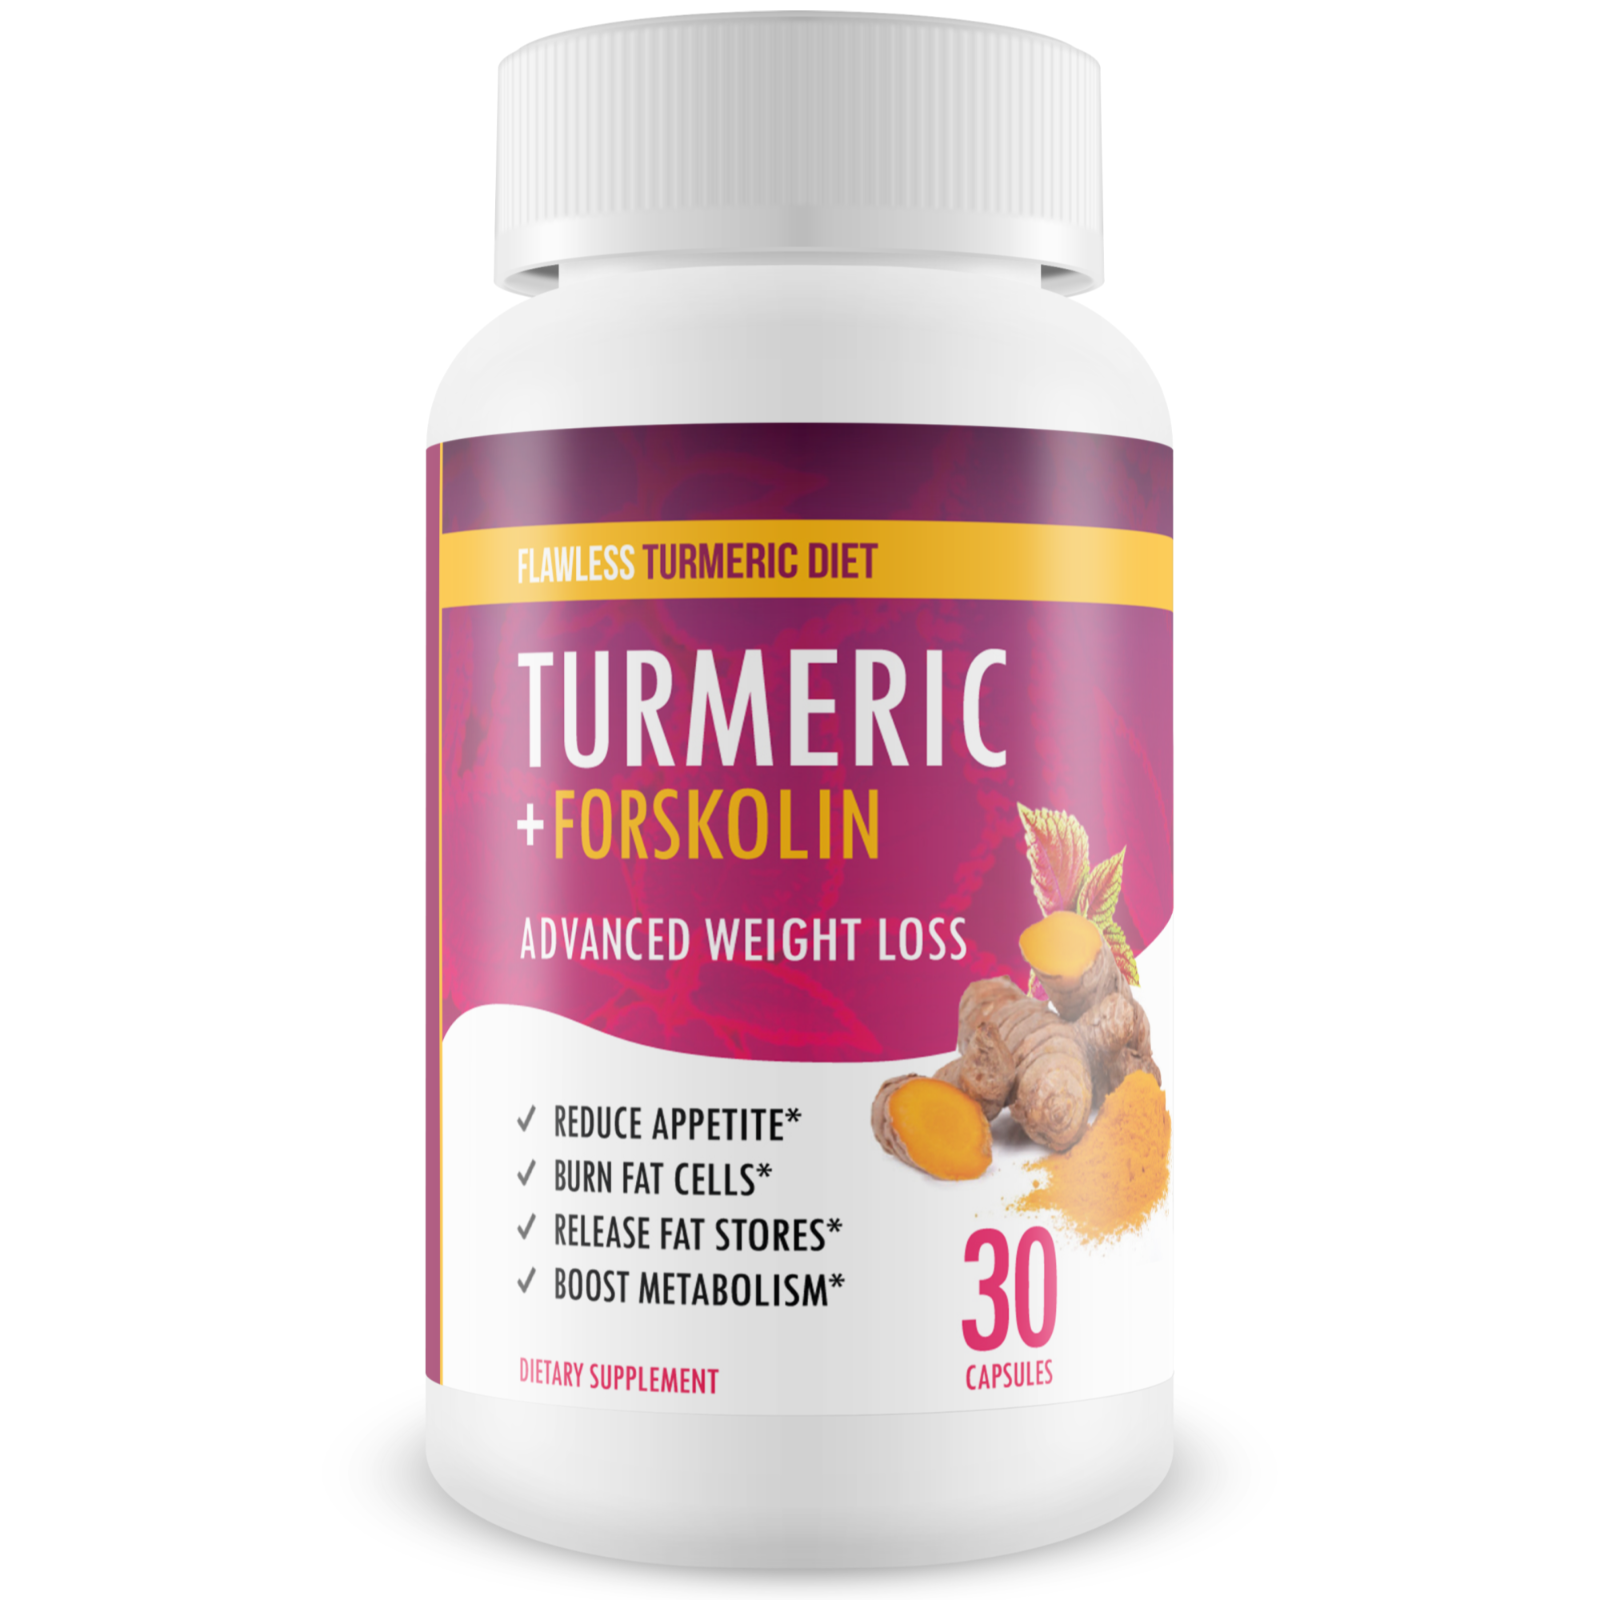 Flawless Turmeric Diet - Turmeric + Forskolin Advanced Weight Loss Formula